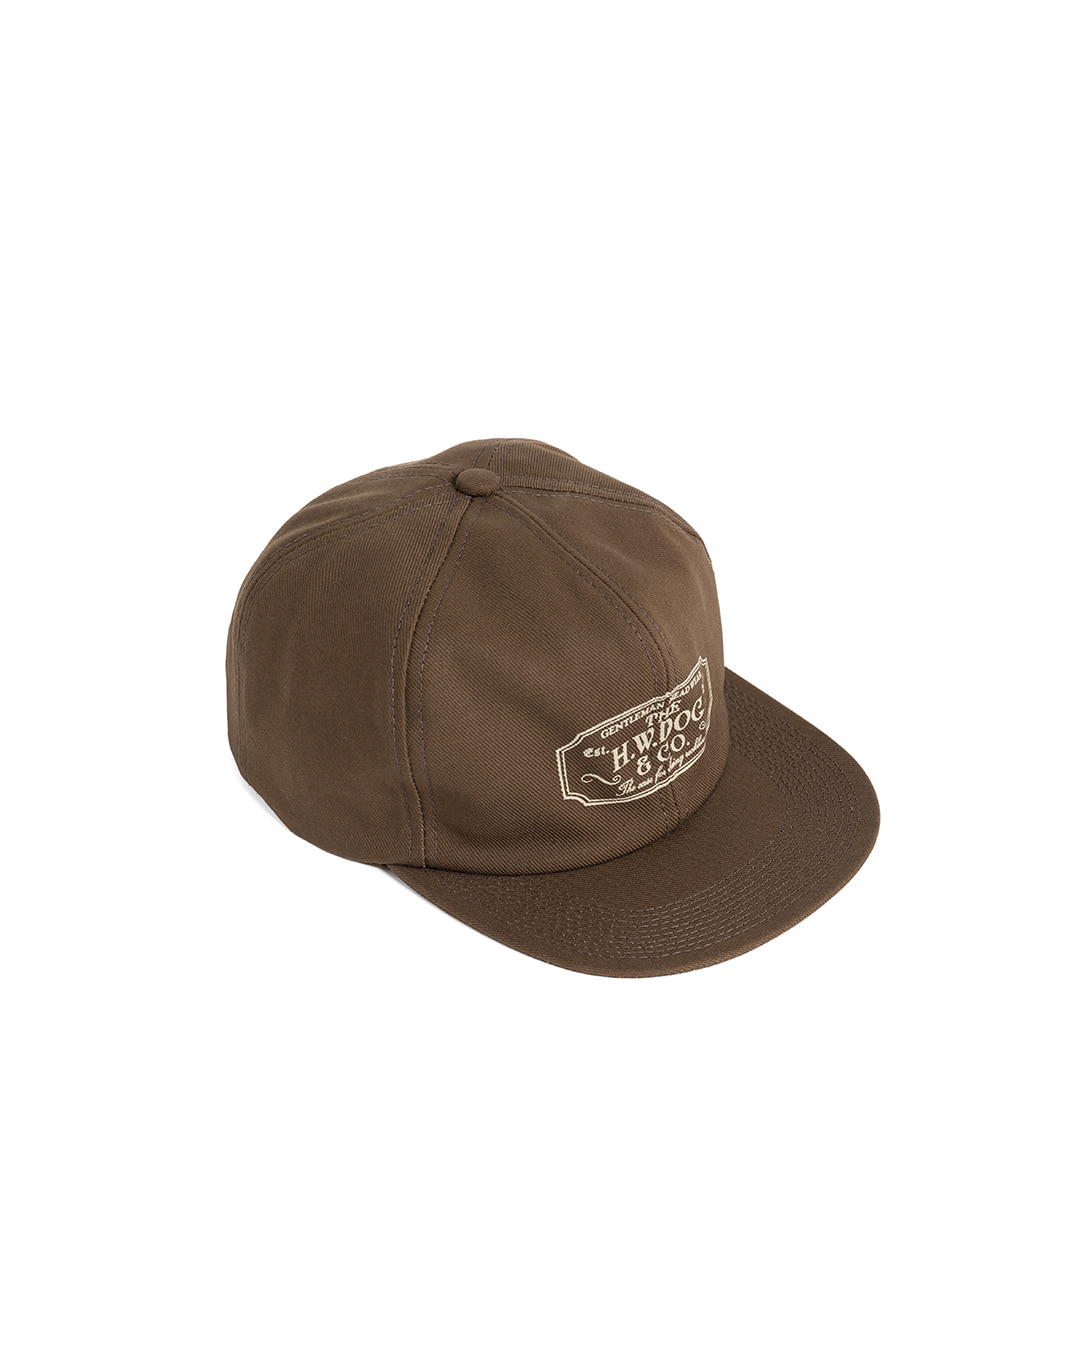 TRUCKER CAP (brown)